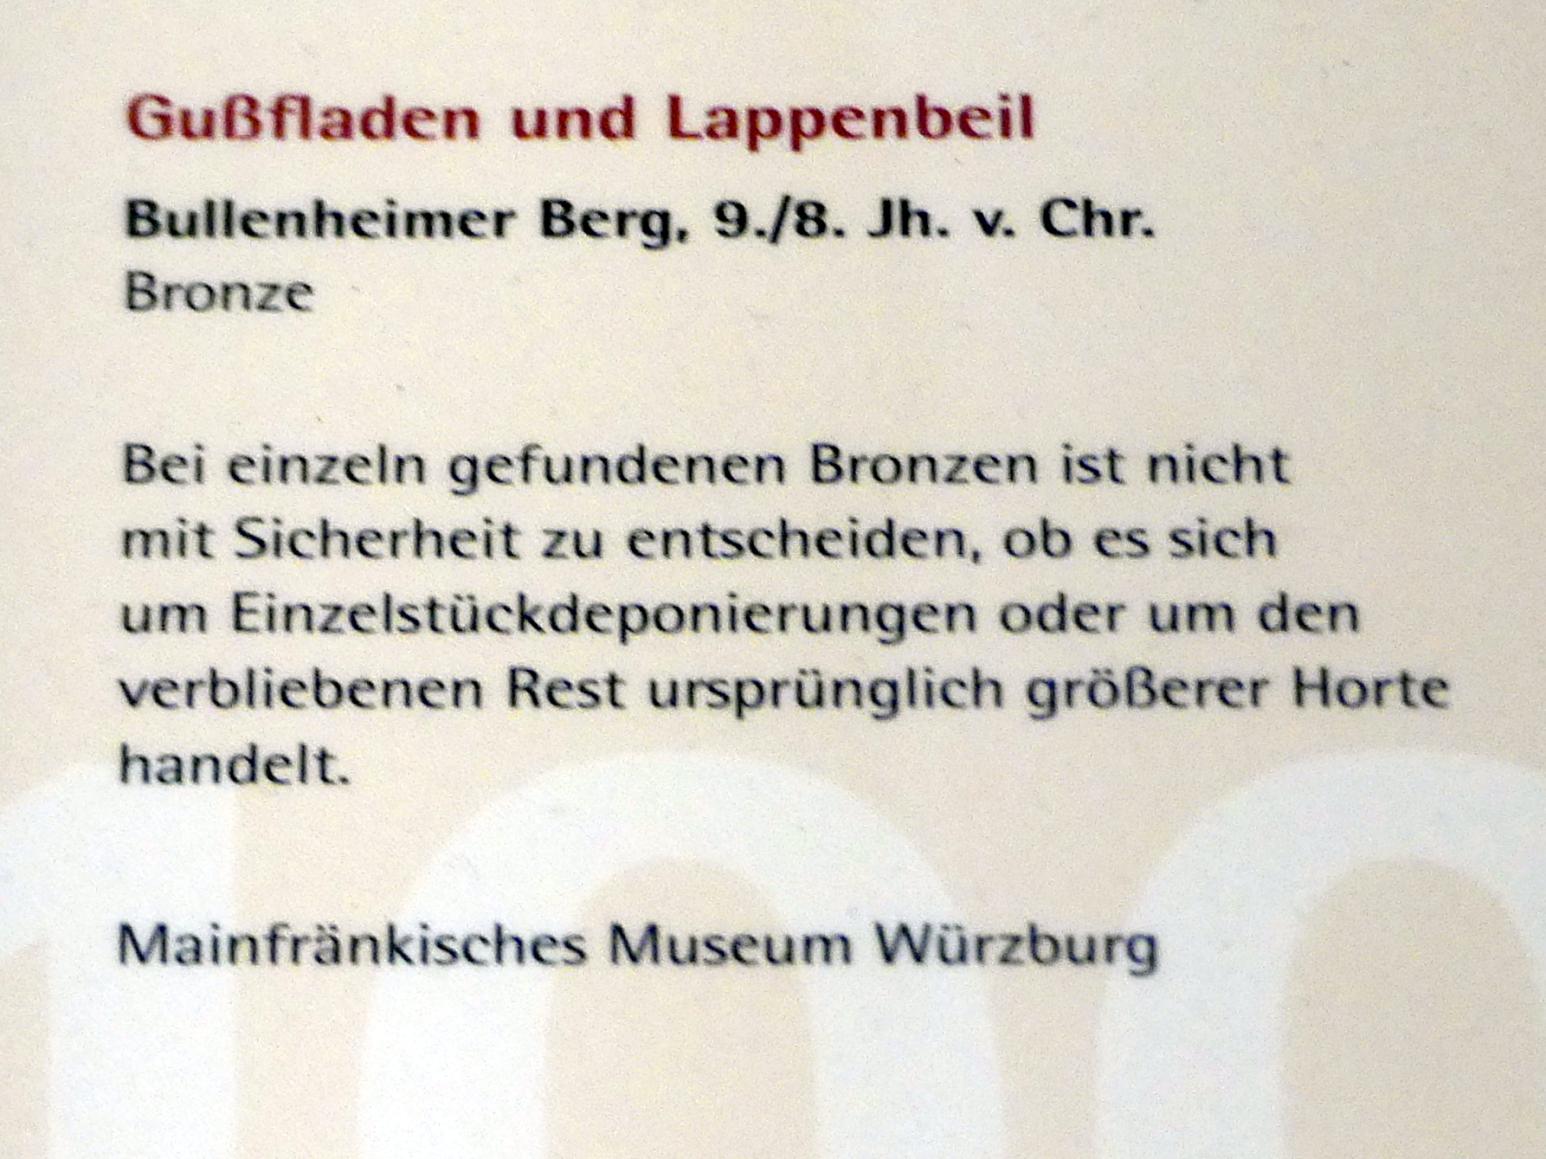 Gußfladen, Urnenfelderzeit, 1400 - 700 v. Chr., 900 - 700 v. Chr., Bild 2/2